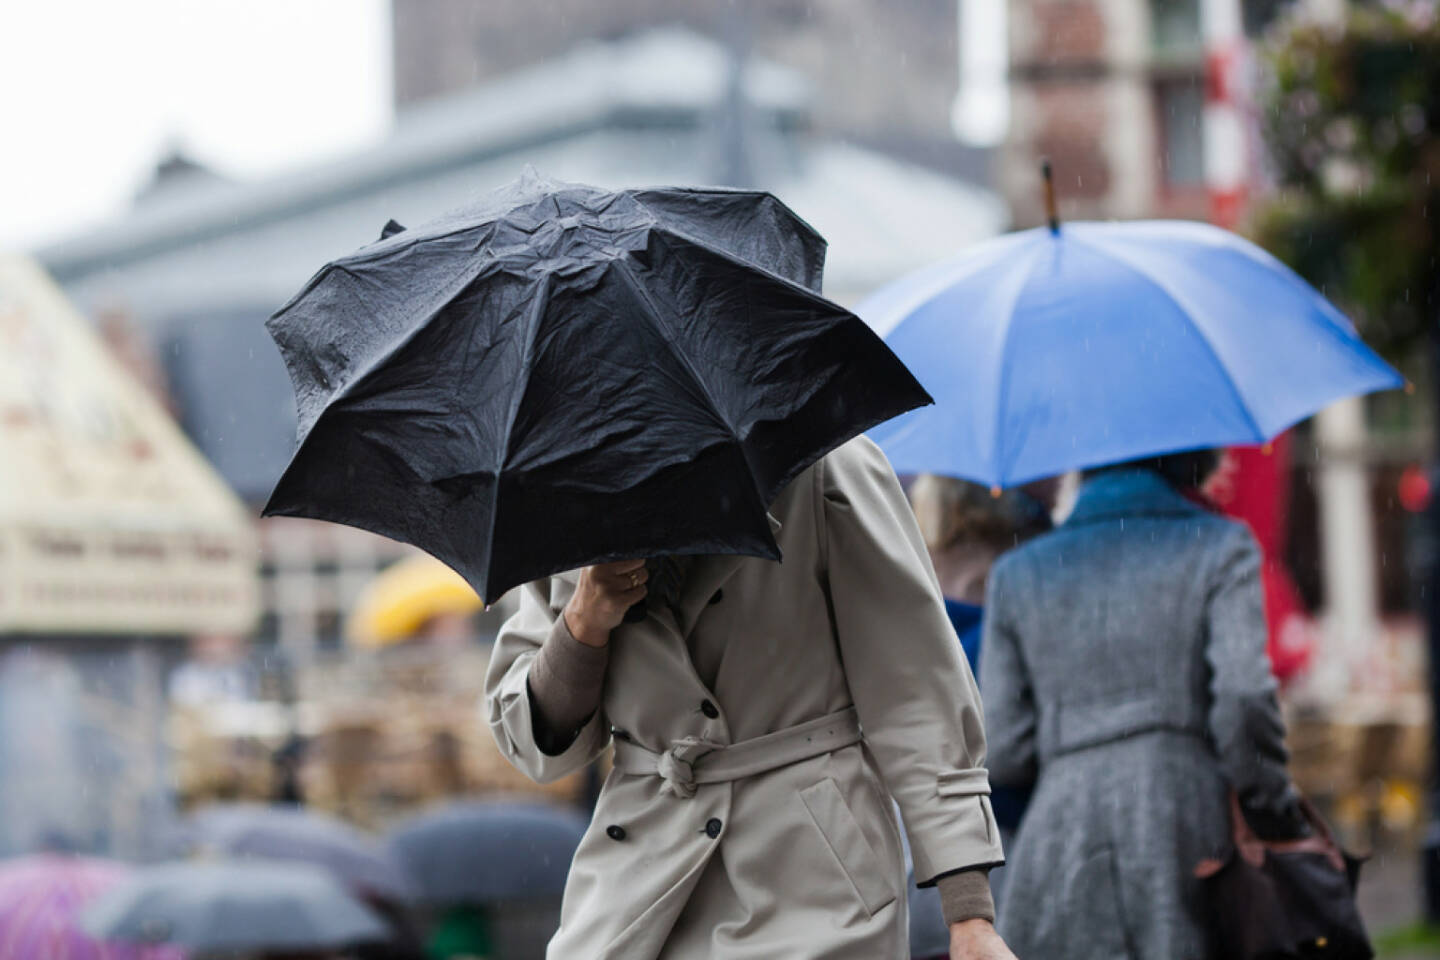 Regenschirm, Regen, Sturm, kalt, Wasser, nass, Gegenwind, http://www.shutterstock.com/de/pic-116020573/stock-photo-people-walking-with-umbrellas-in-the-rainy-city.html (Bild: shutterstock.com)